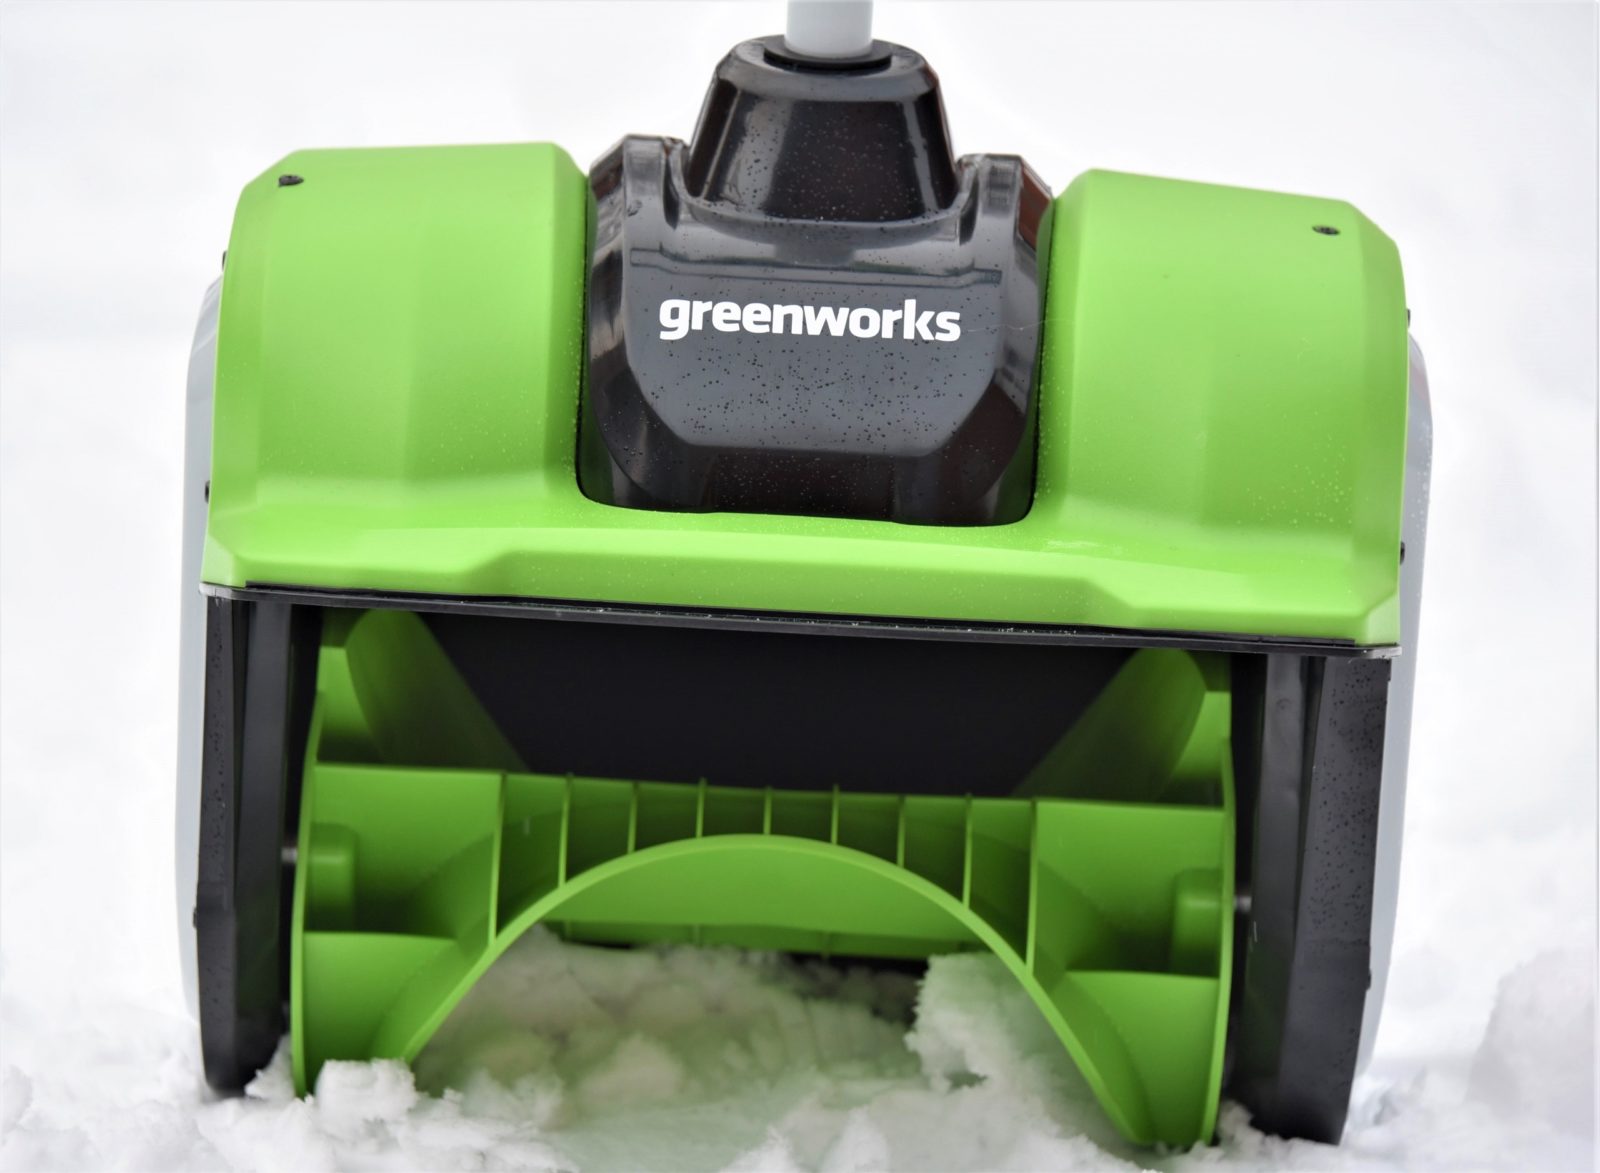 Снегоуборочная лопата аккумуляторная: как выбрать